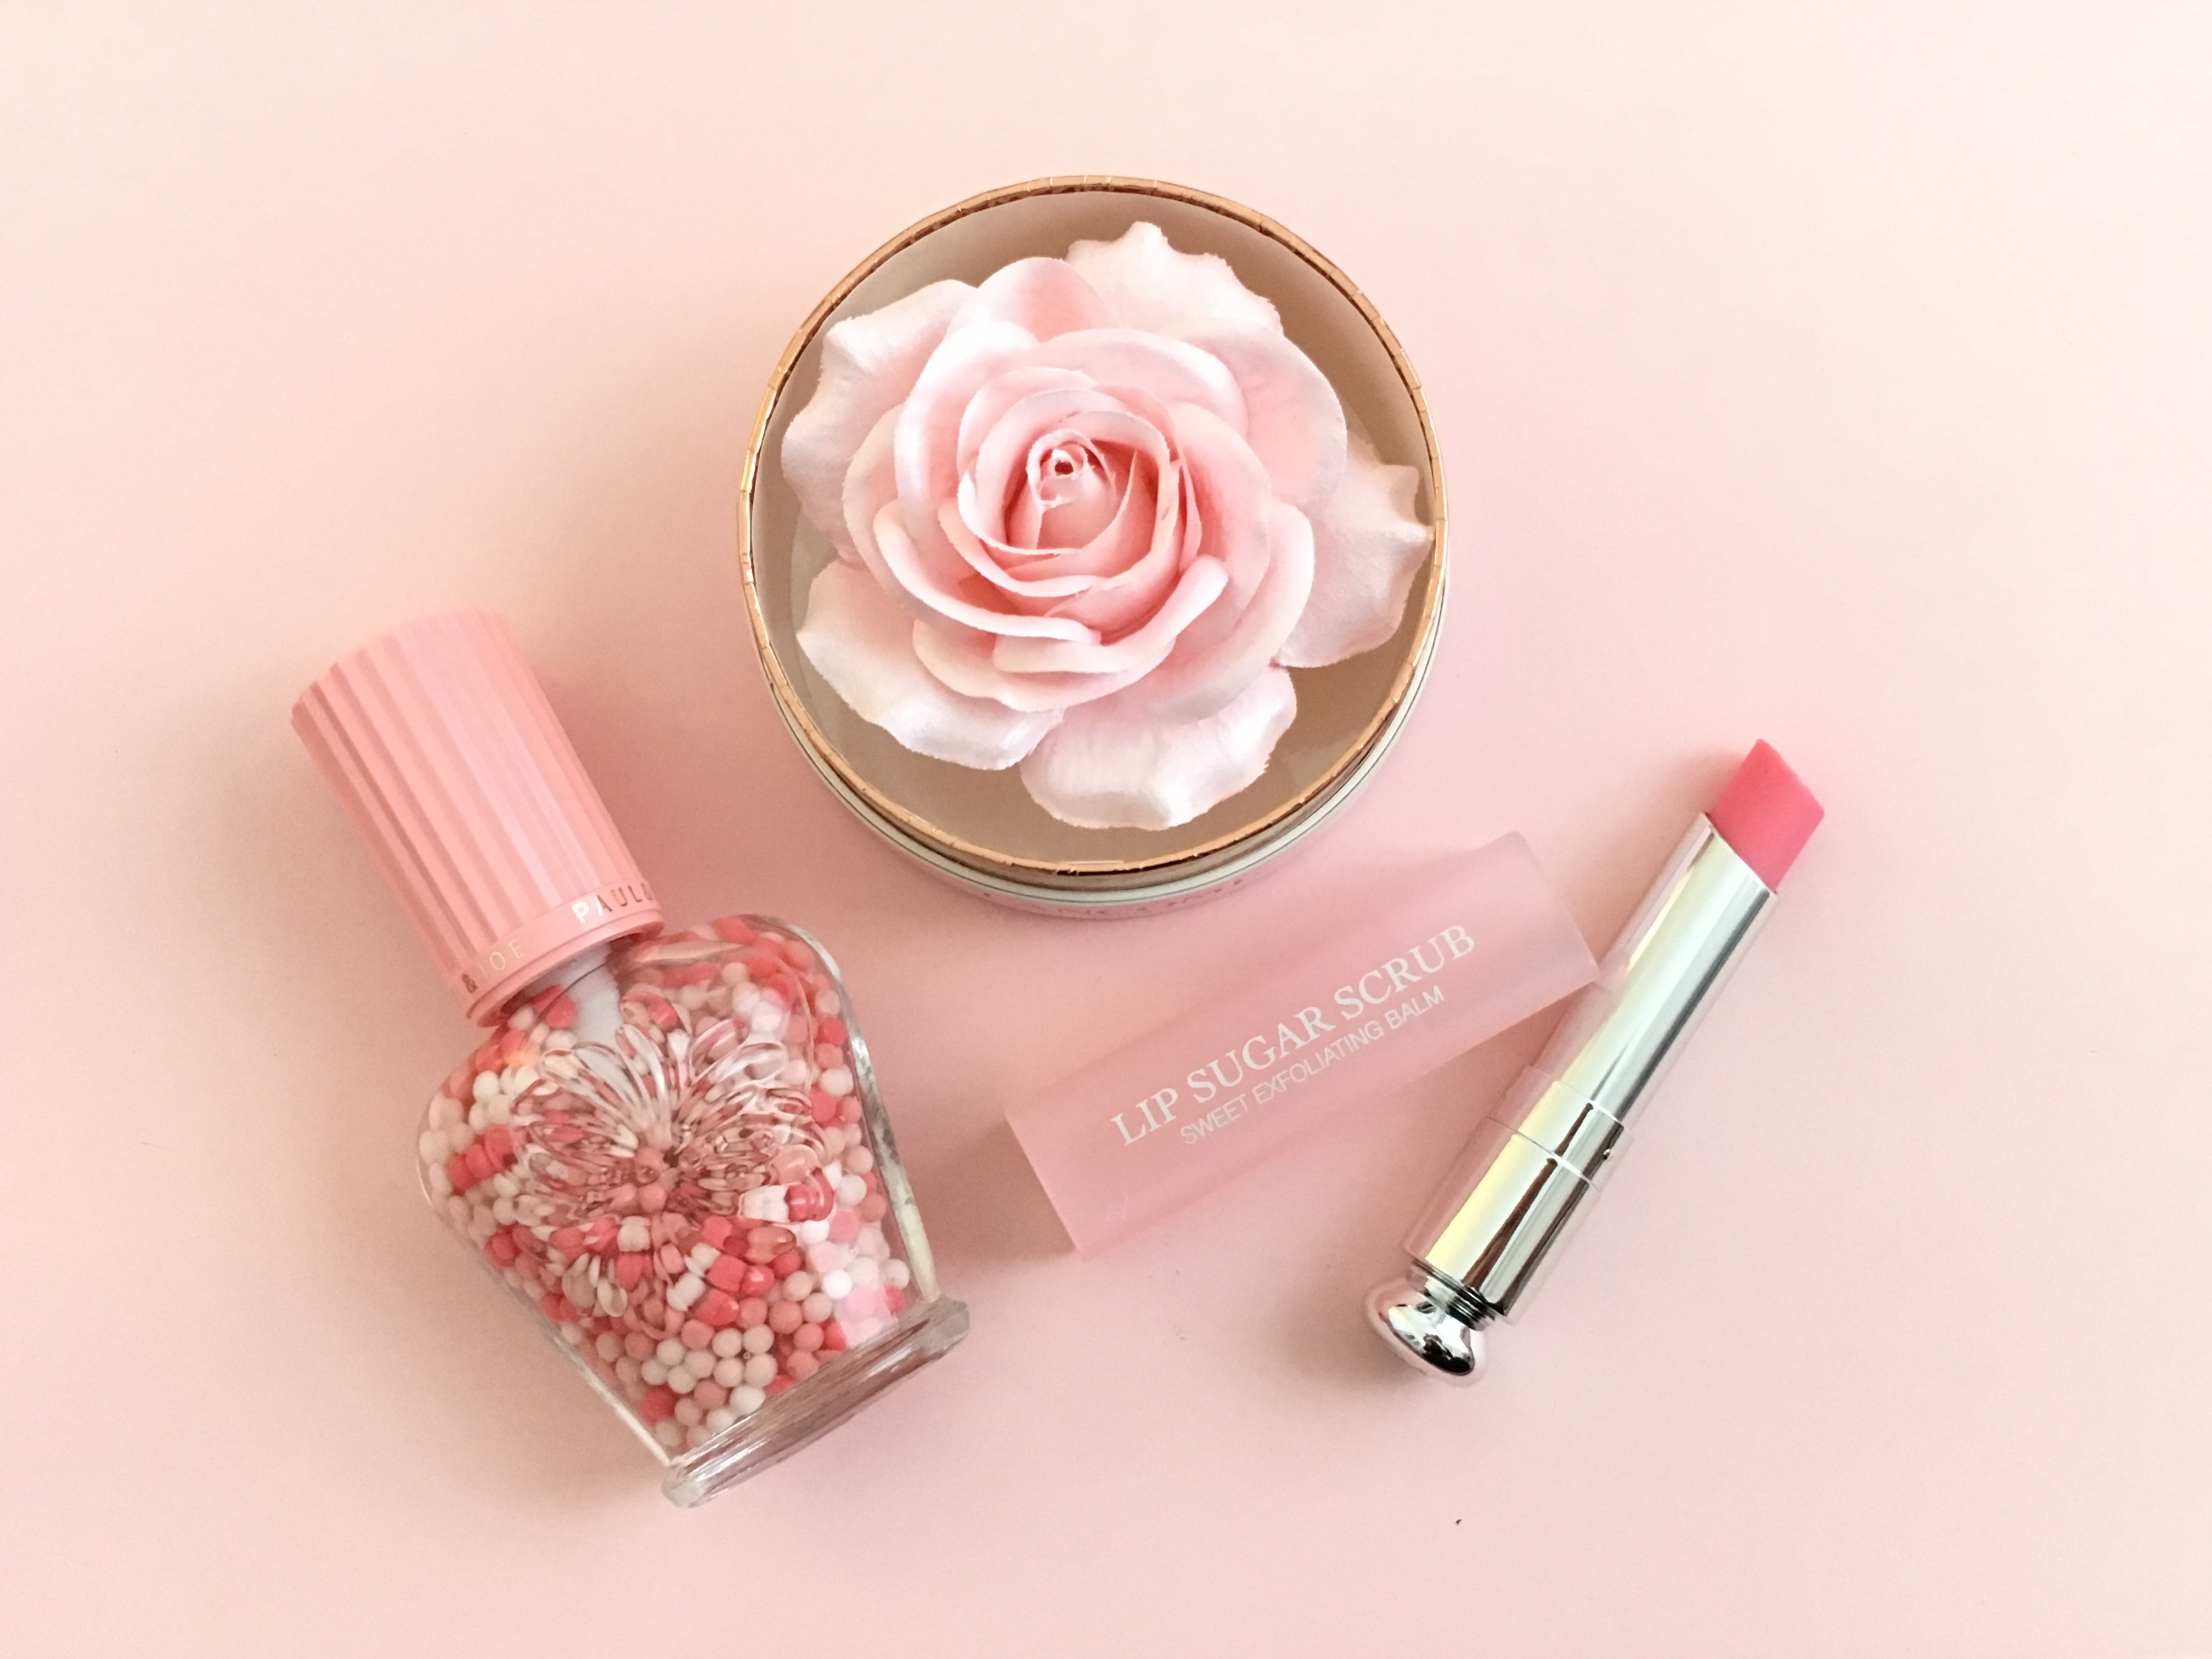 心ときめく ピンクの春コスメで女子力アップ 立花ゆうりさんのブログ Cosme アットコスメ